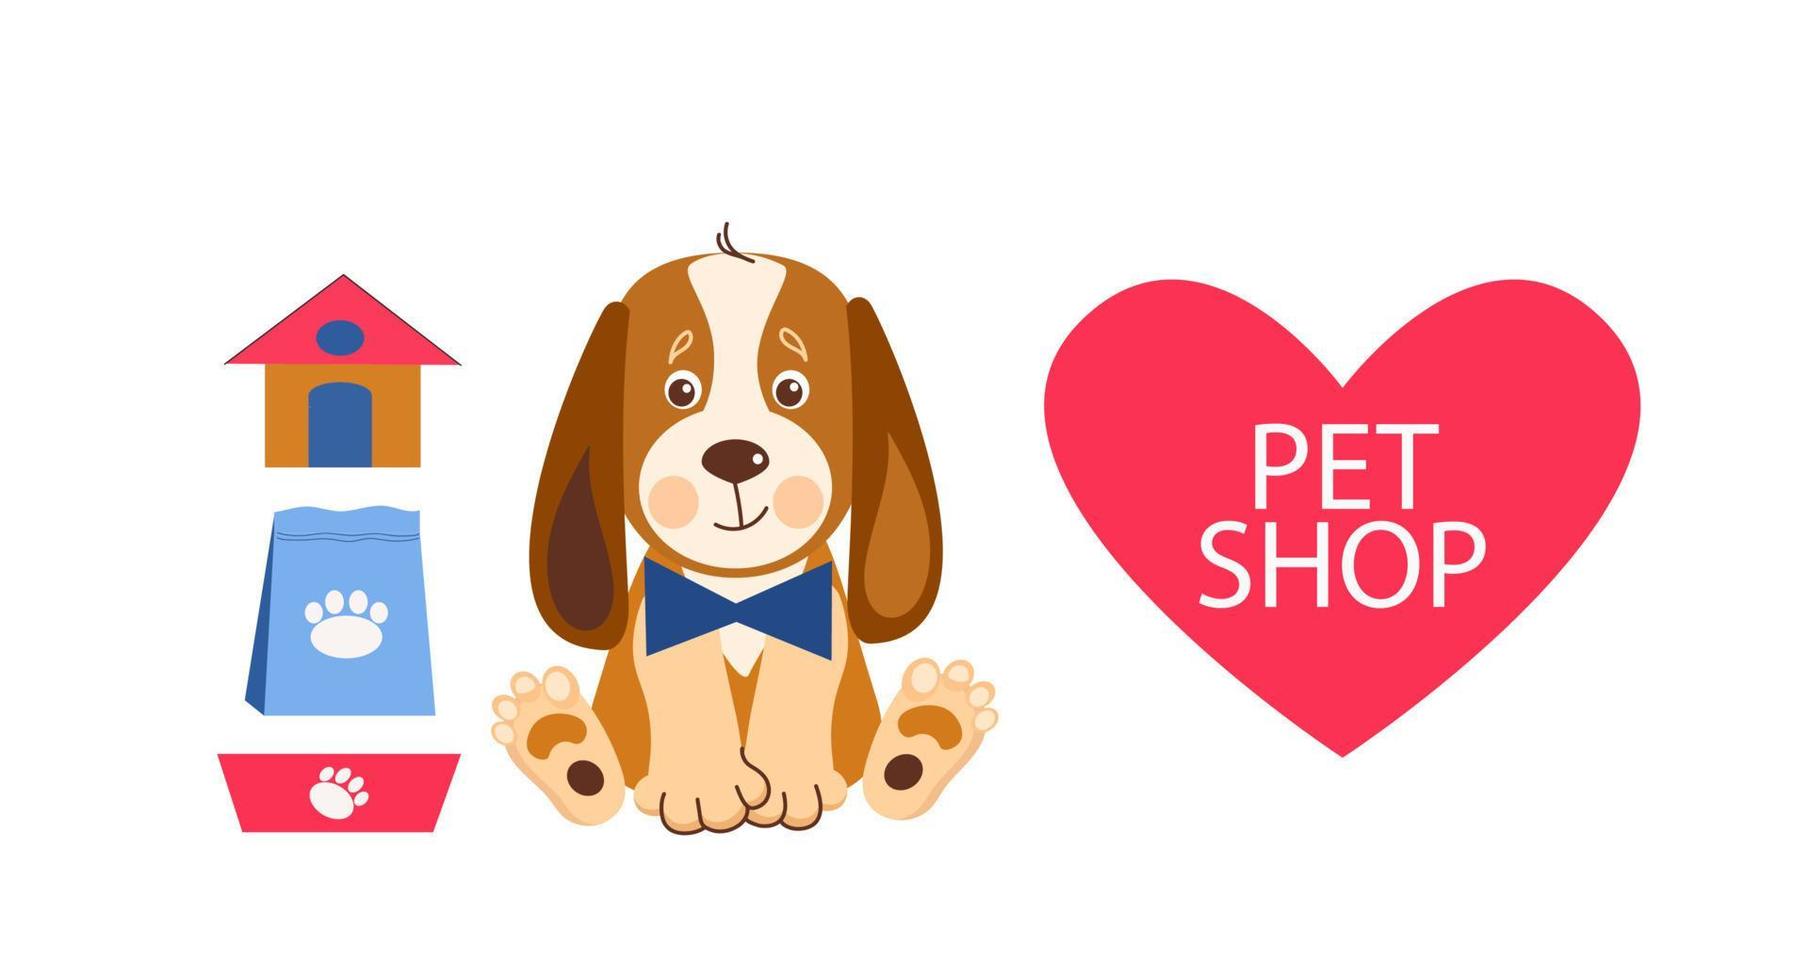 plantilla de diseño de banner de tienda de mascotas. ilustración de dibujos animados vectoriales de gatos, perros, casa, comida. vector